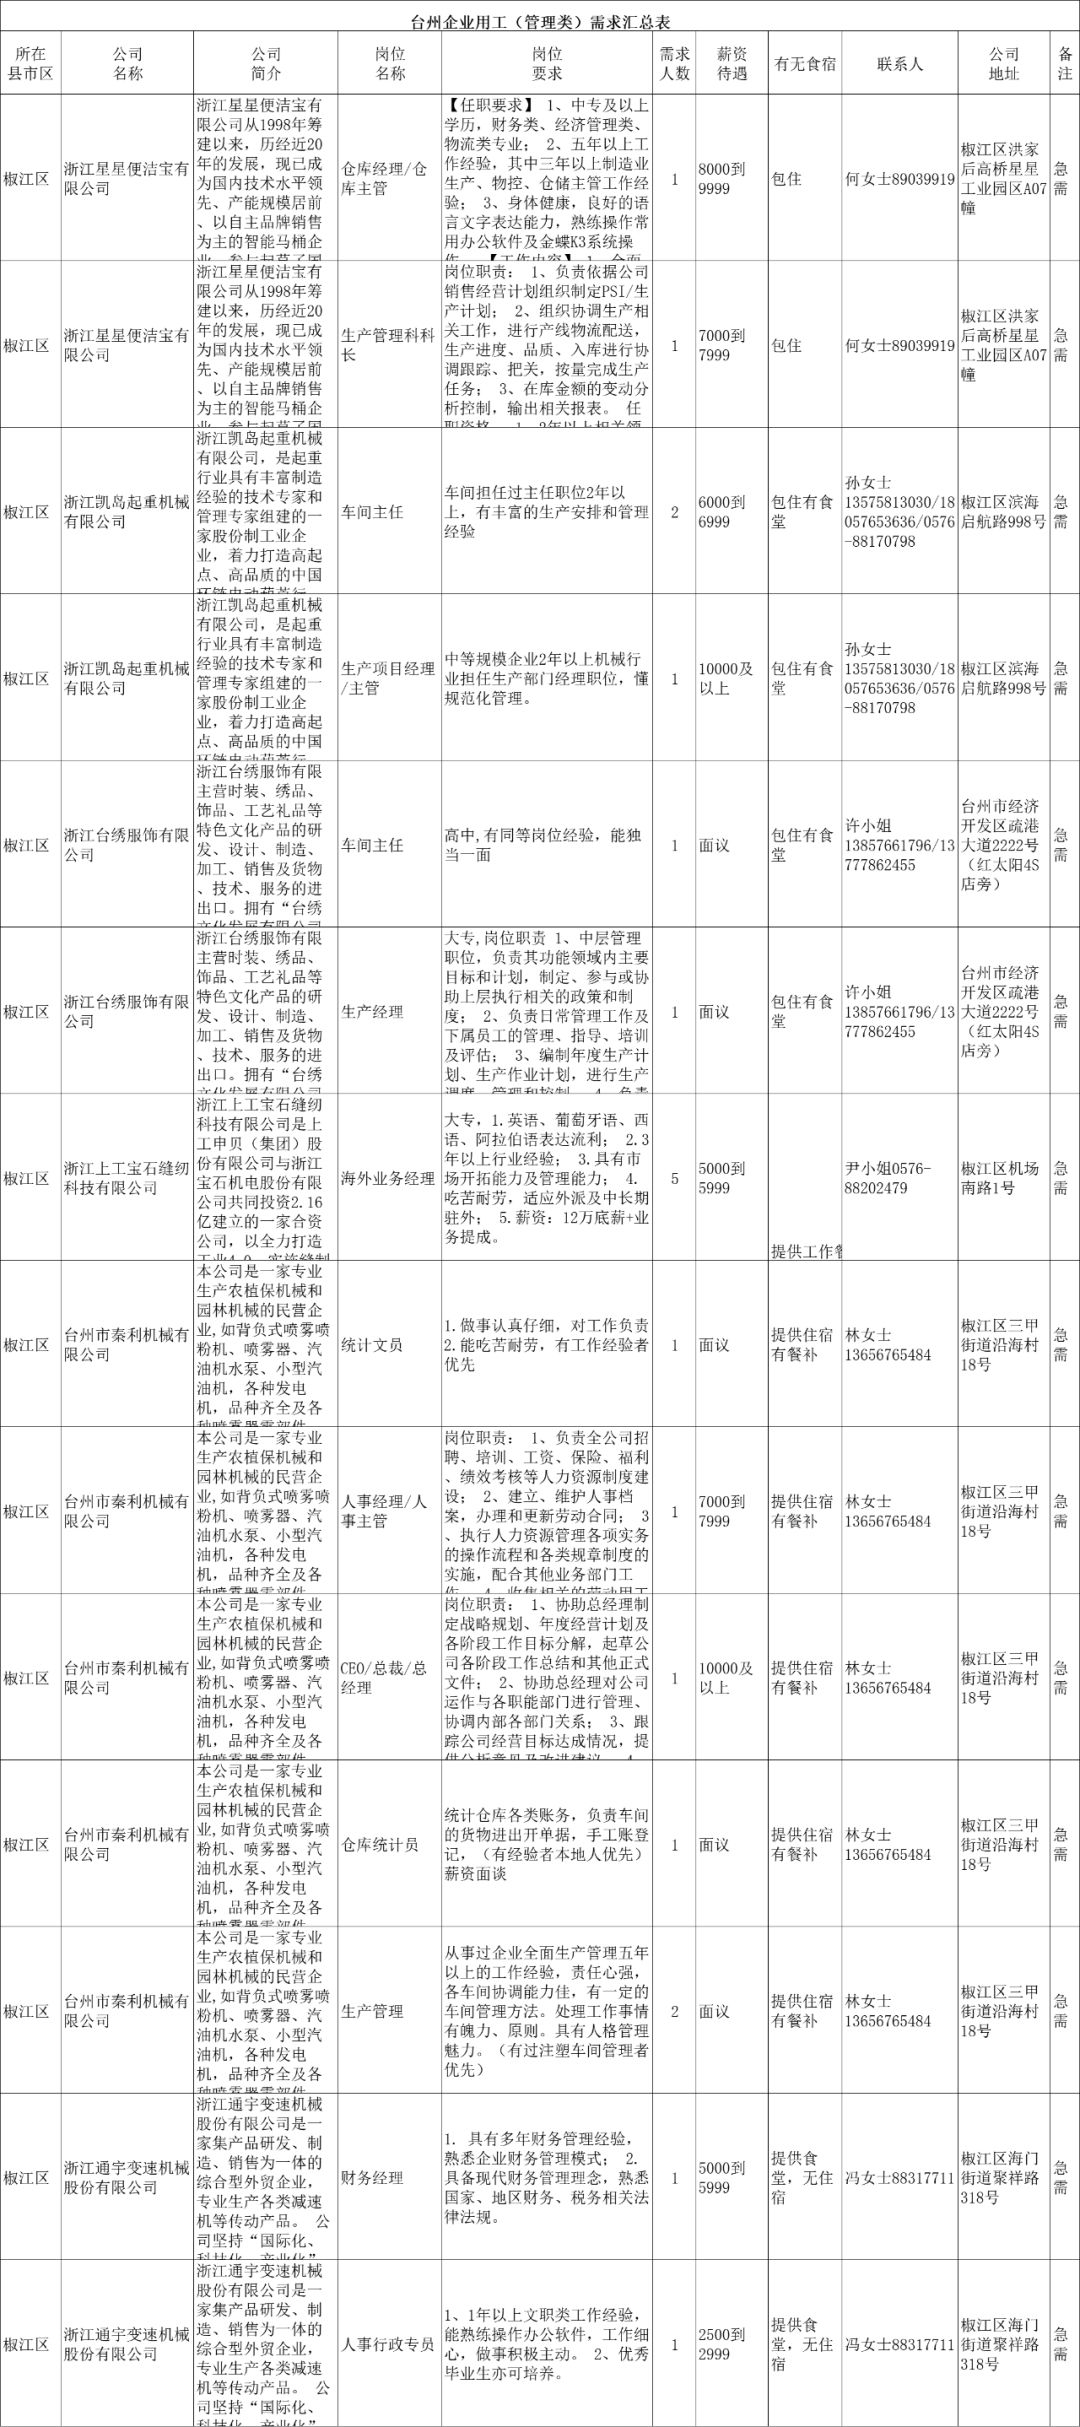 工岗直通车丨有外出务工需求 团团帮你,台州市用工信息看这里 十六